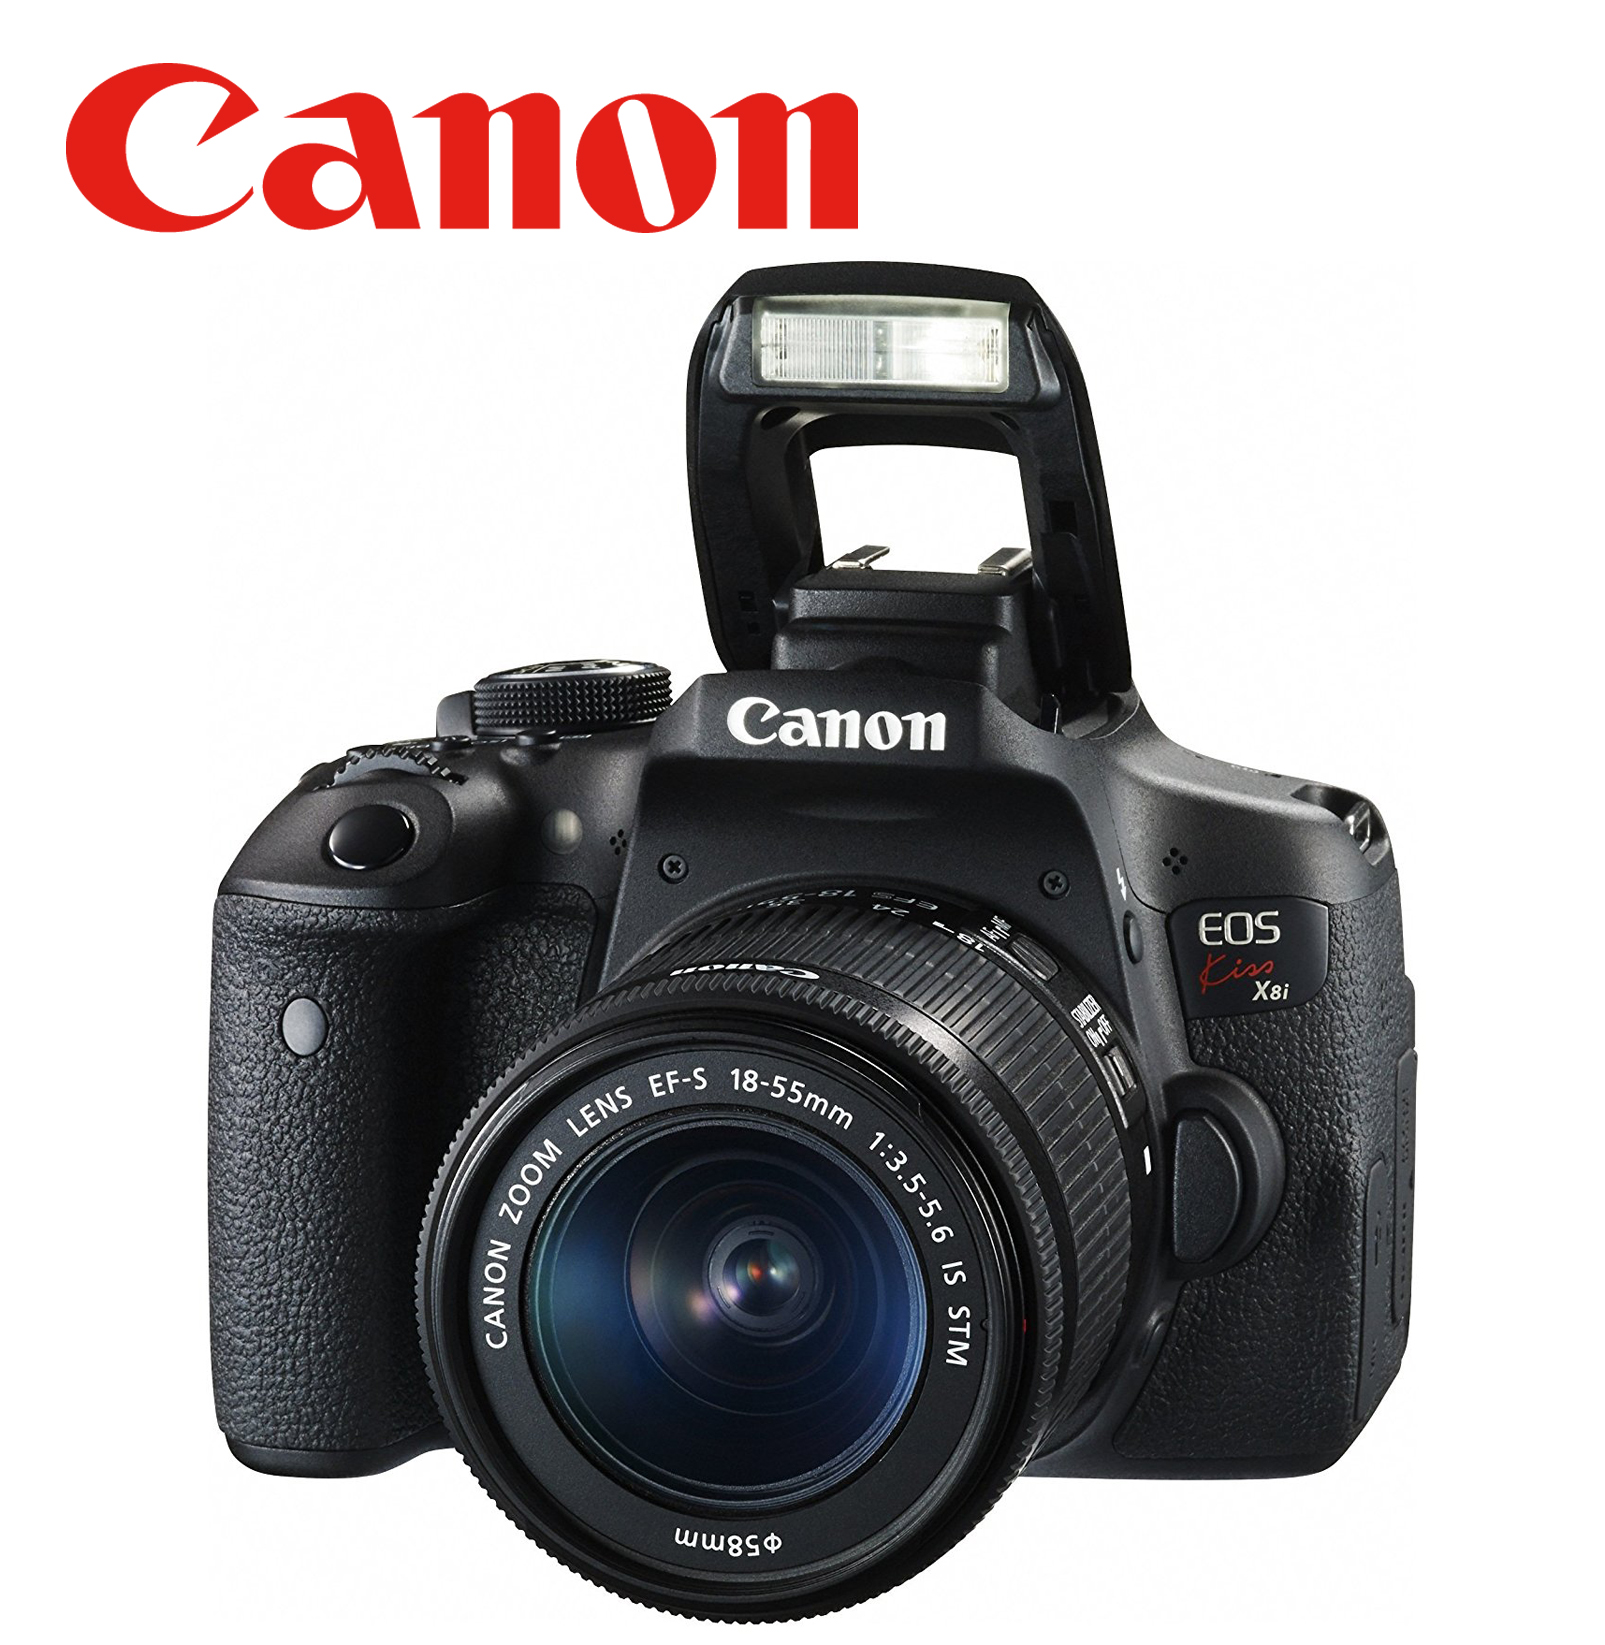 【Canon】デジタル一眼レフカメラ EOS Kiss X8i |開業・開店・移転祝いにWebカタログギフト「オフィスギフト」